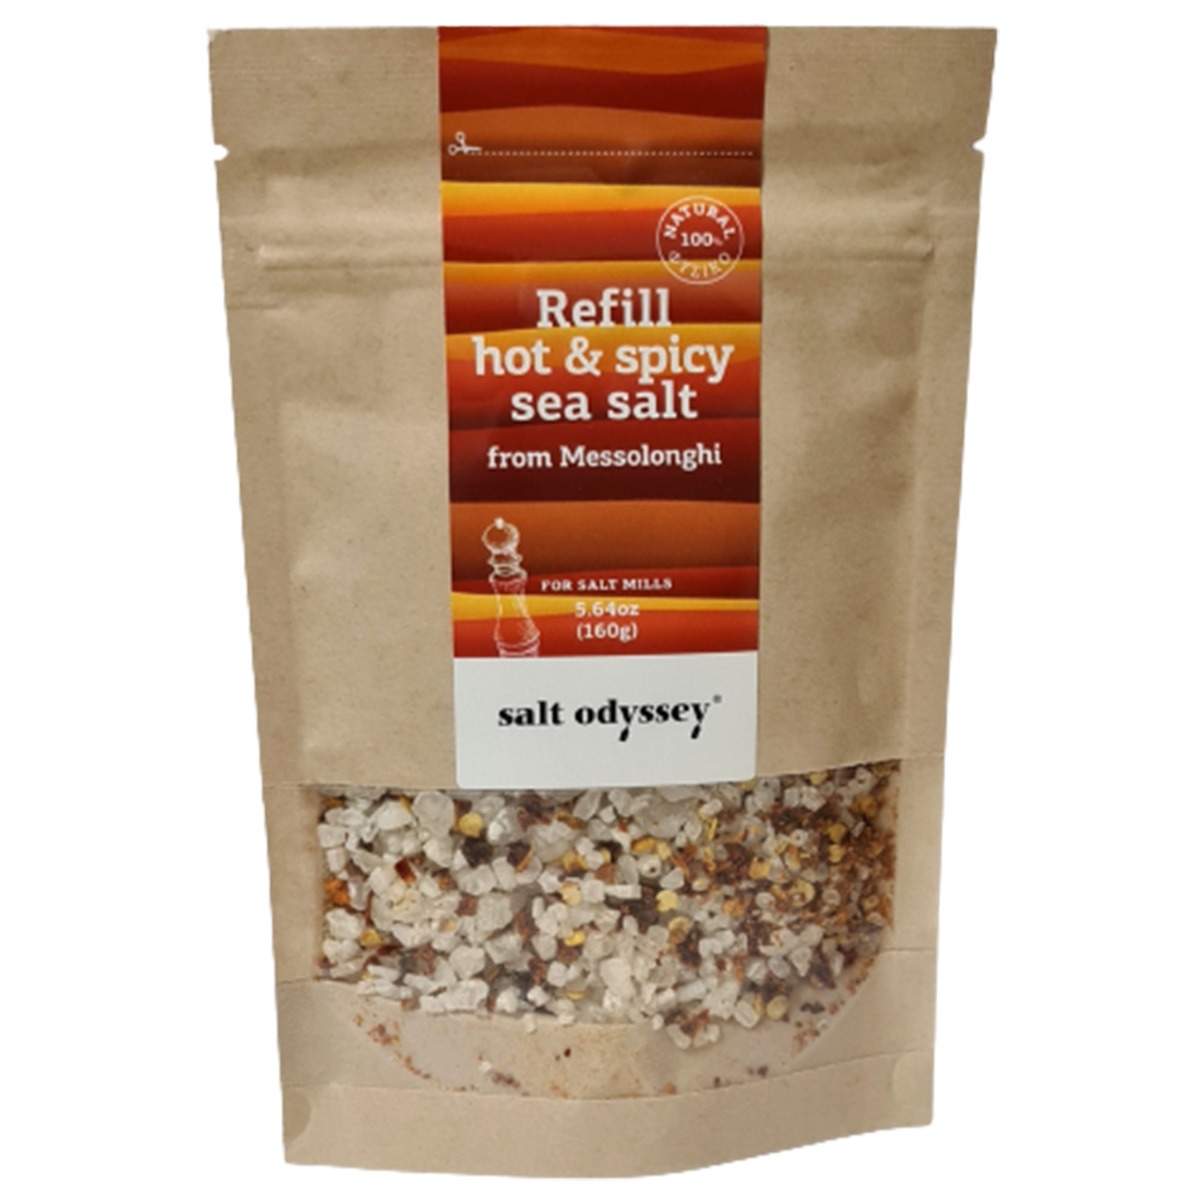 Hot & Spicy Sea Salt, 160g – Salt Odyssey®